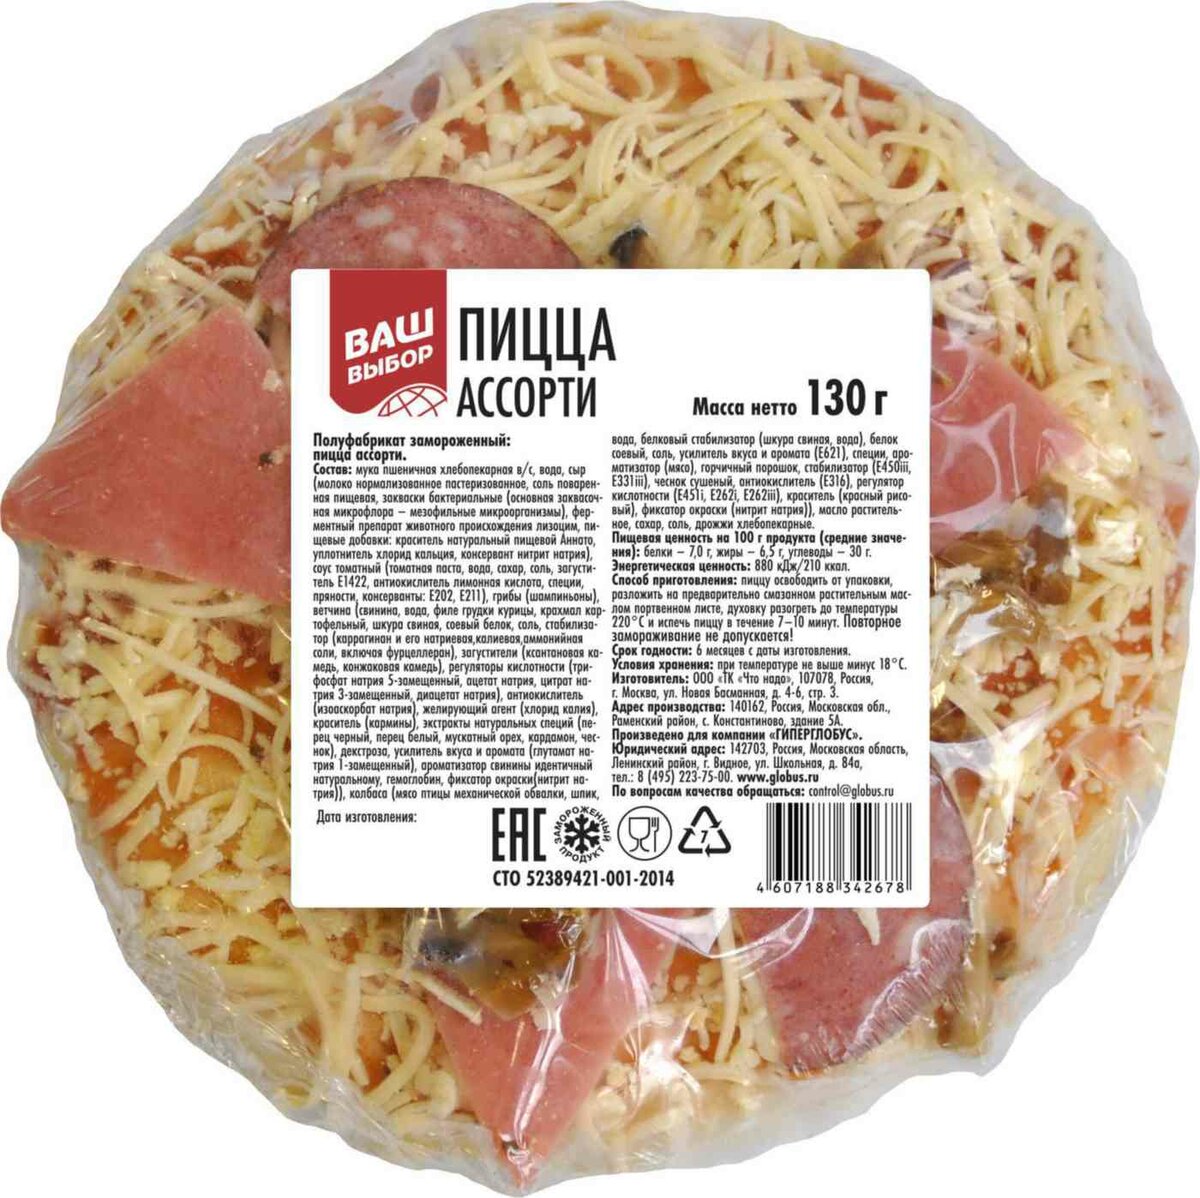 пицца ассорти в москве фото 110